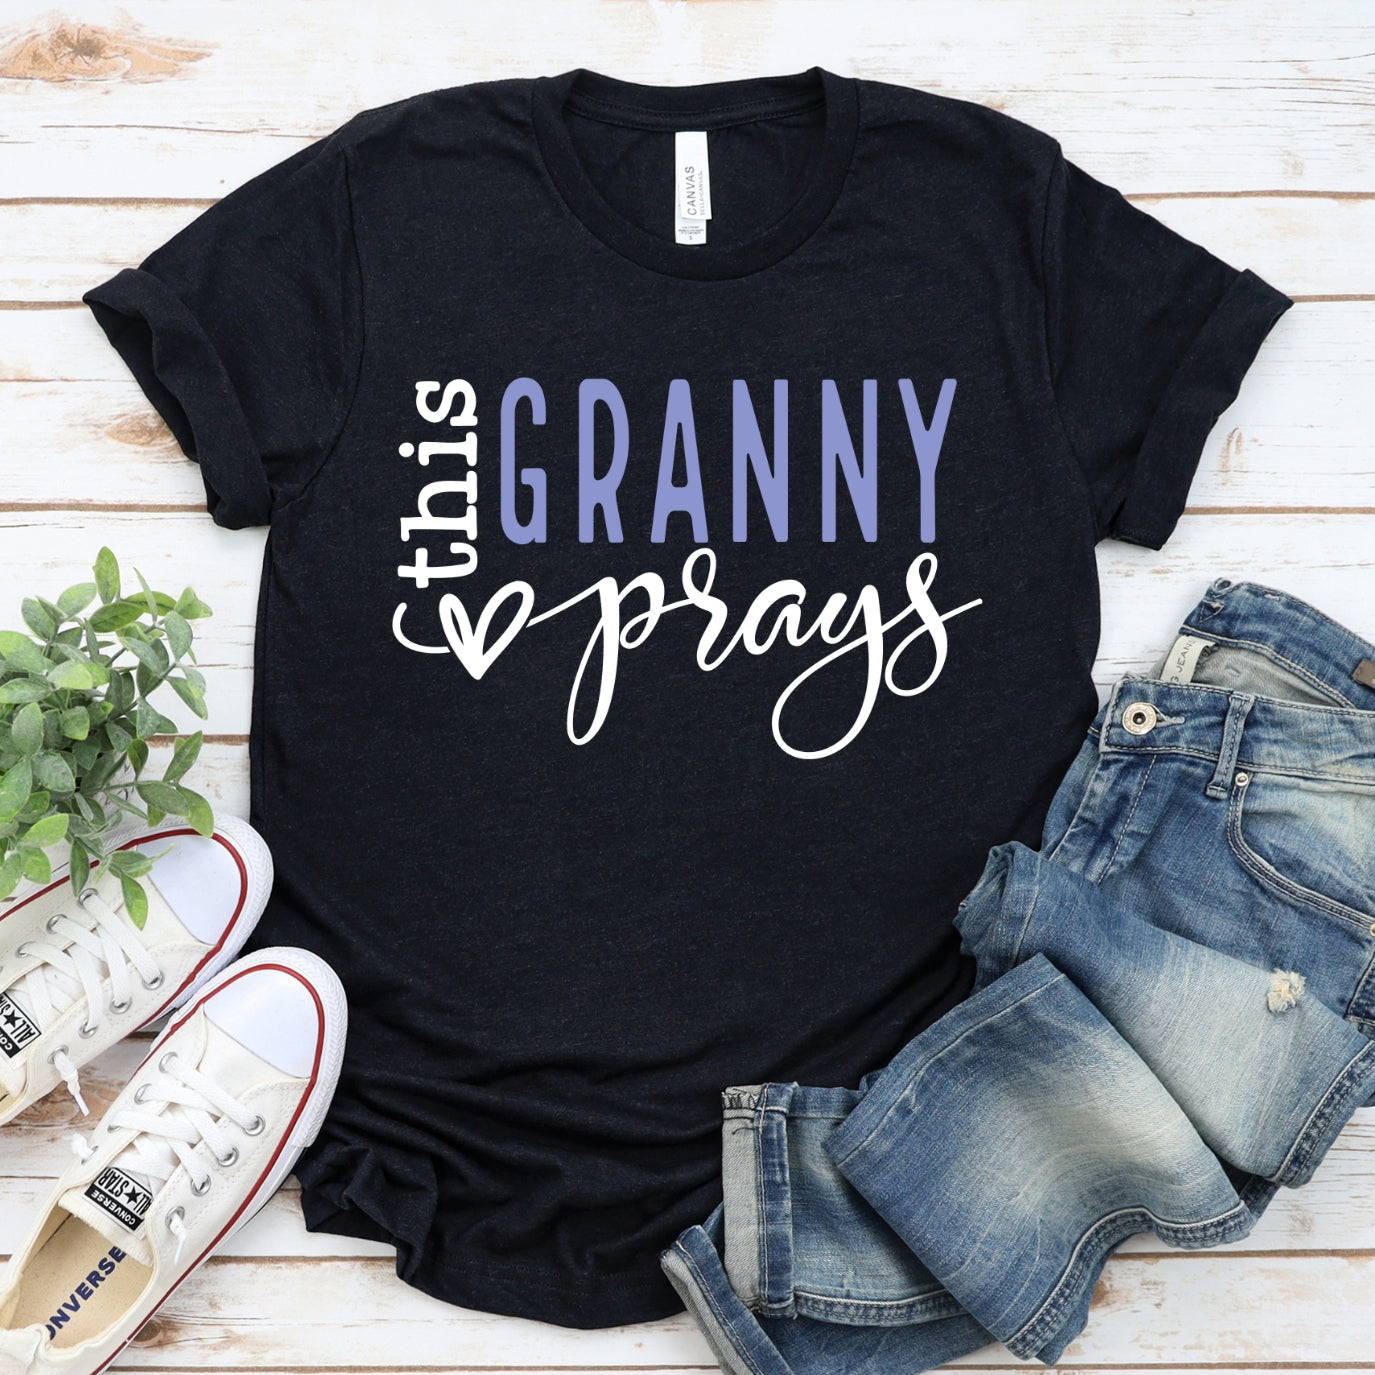 This Granny Prays Women's T-Shirt